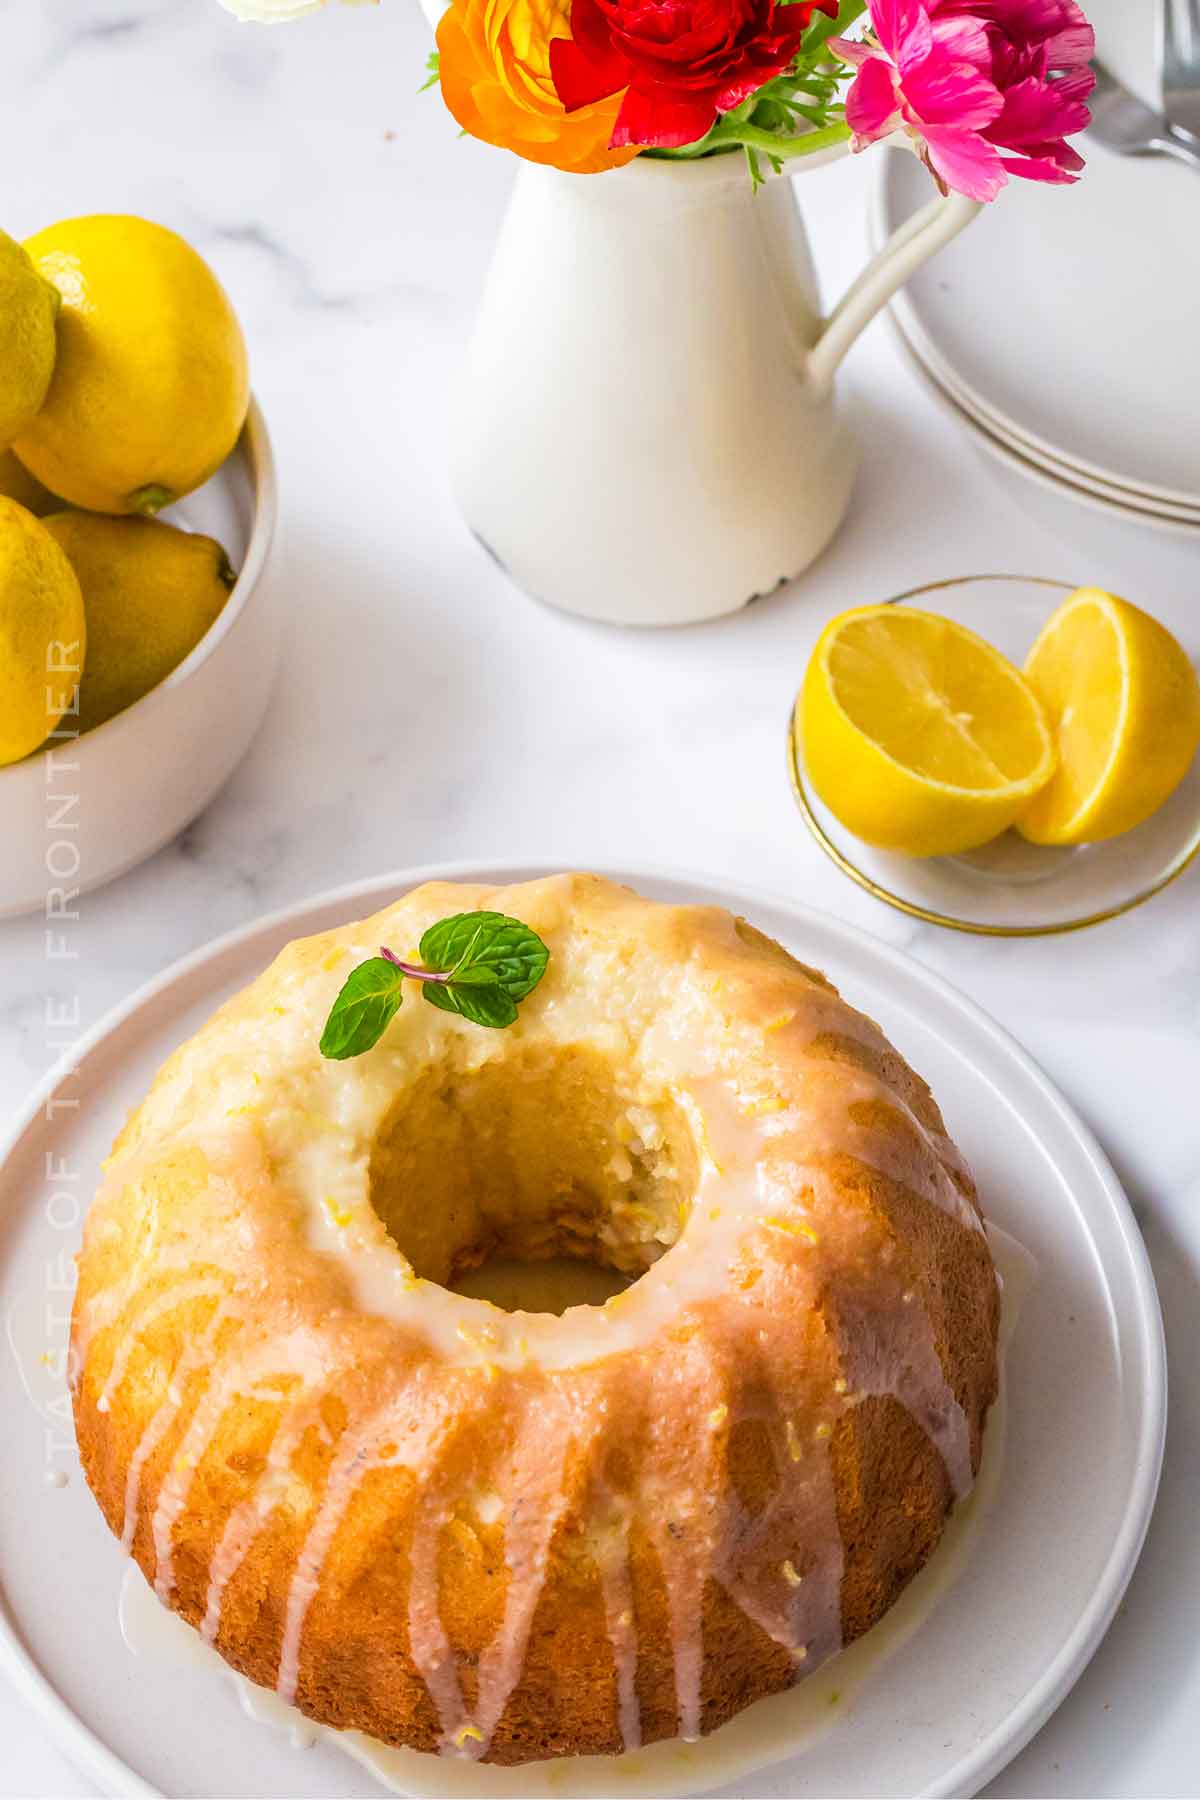 Lemon Bundt Cake with Icing